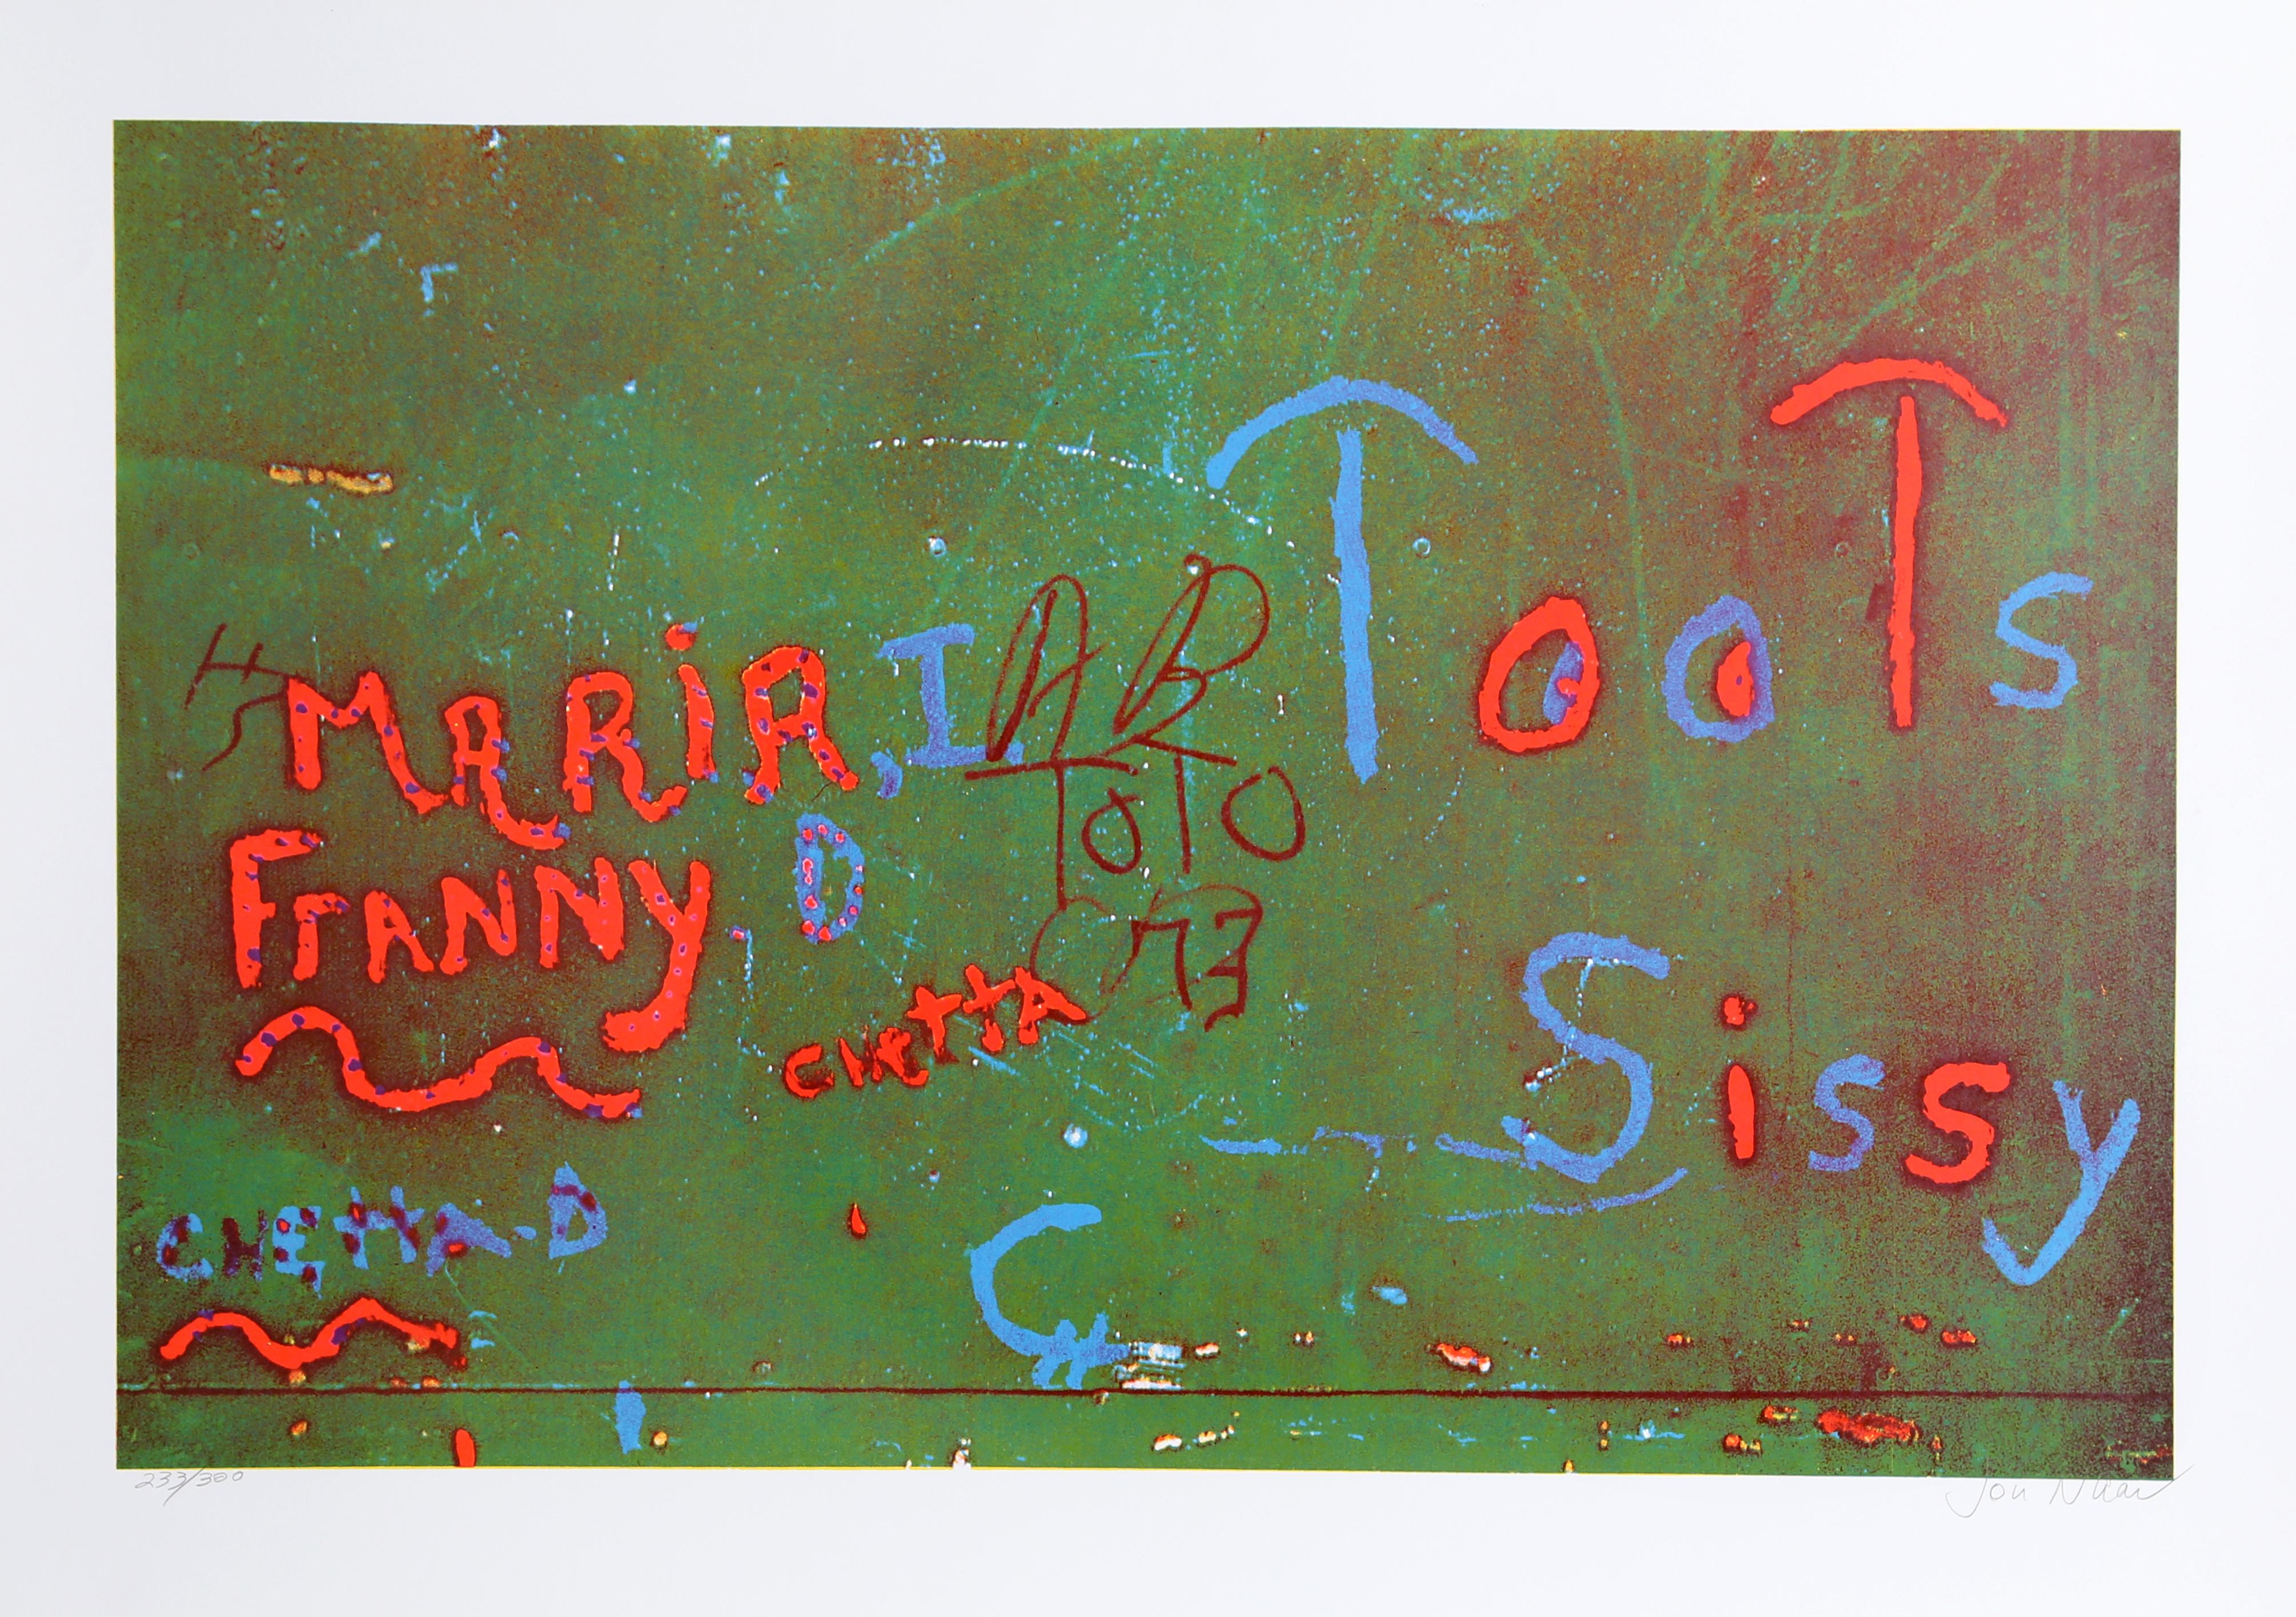 ""Toots" von Faith of Graffiti, 1974, Serigraphie von Jon Naar